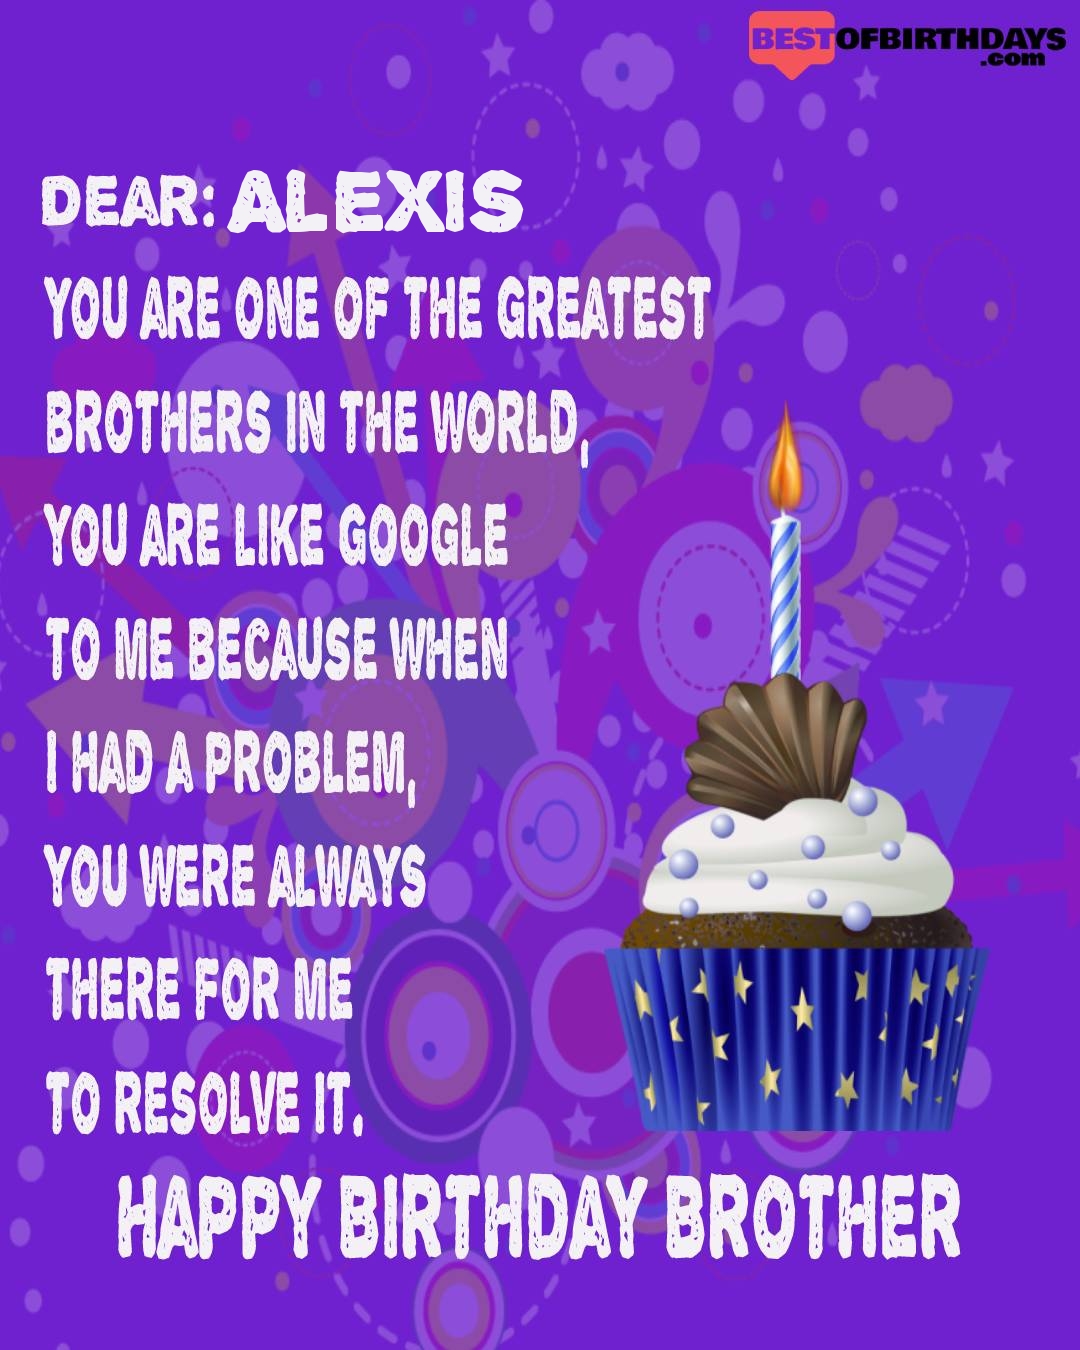 Happy birthday alexis bhai brother bro